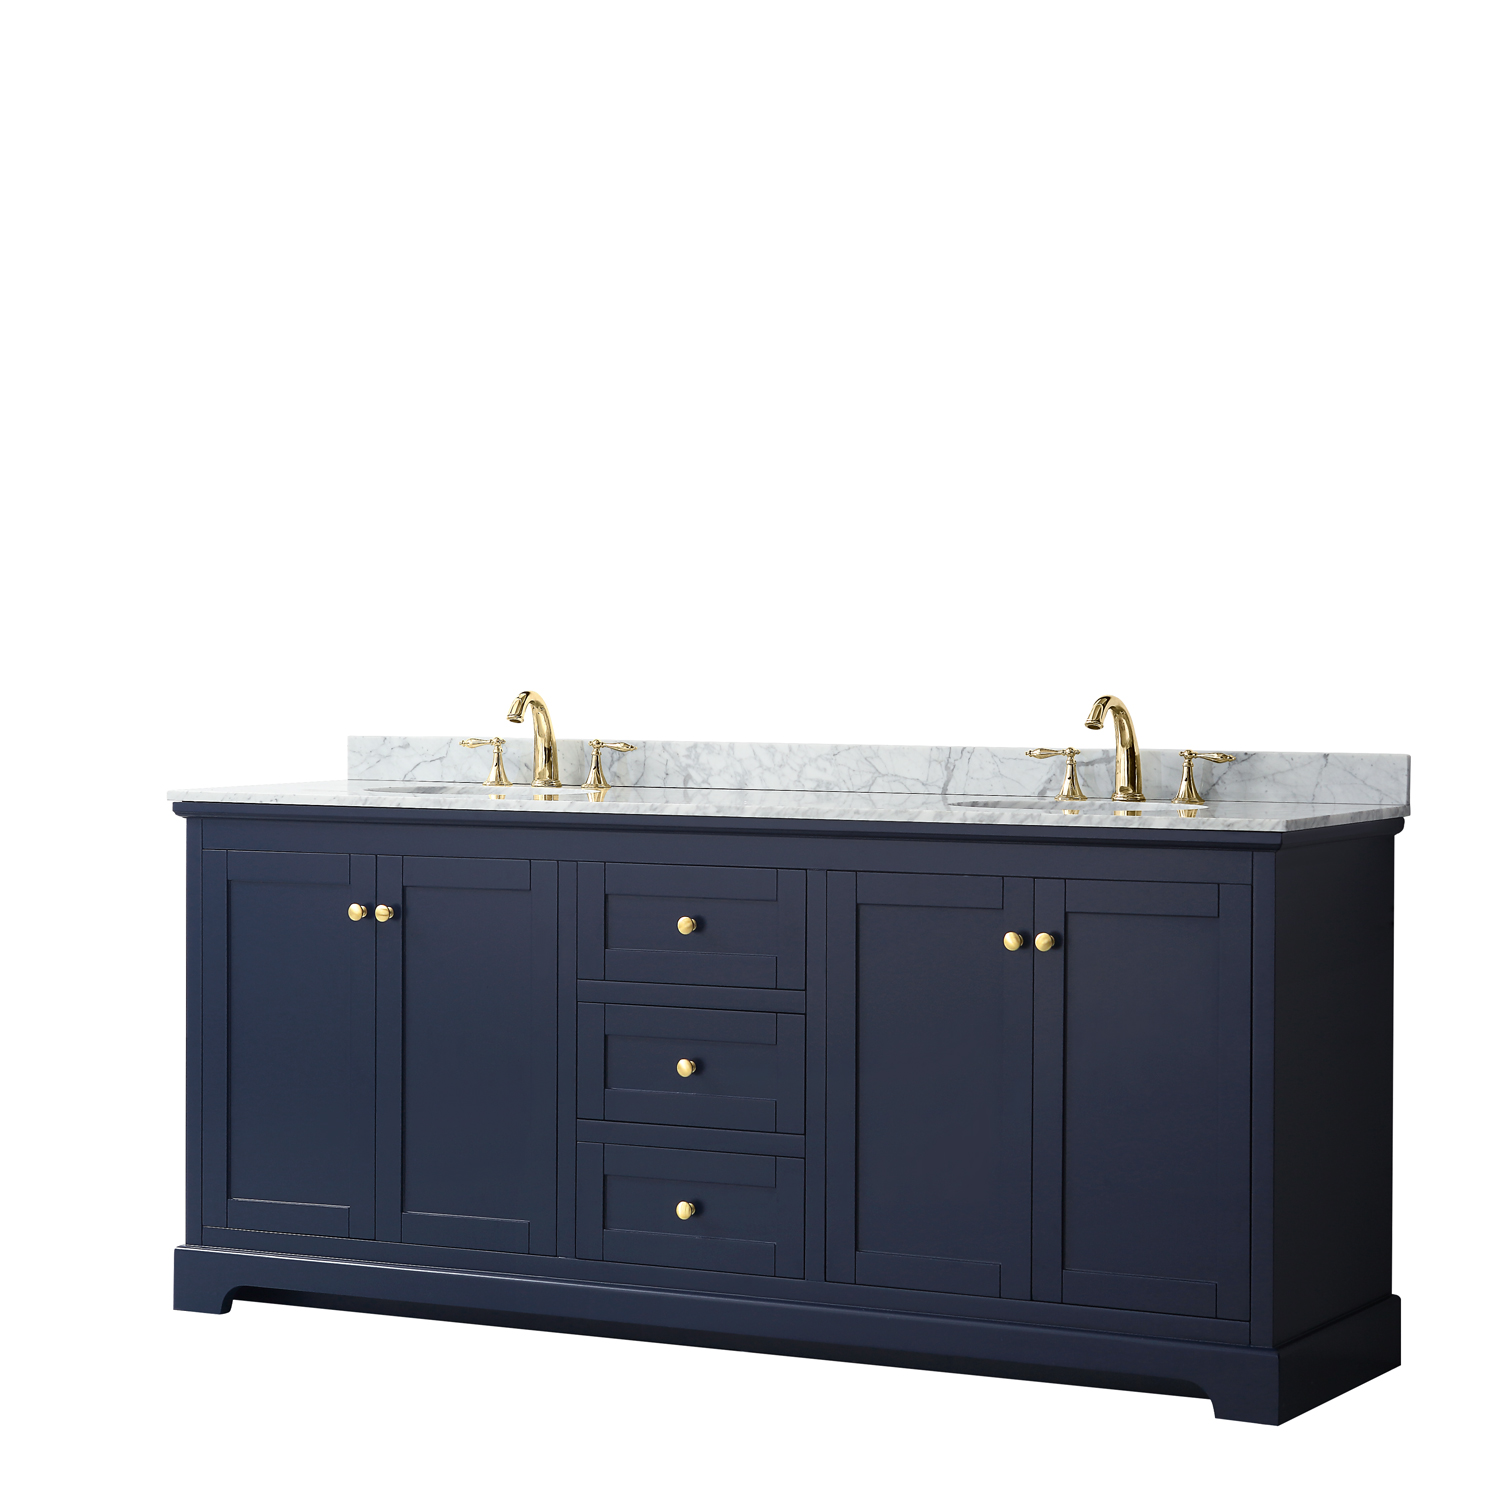 80" Double Bathroom Vanity in Dark Blue, No Countertop, No Sinks, and No Mirror